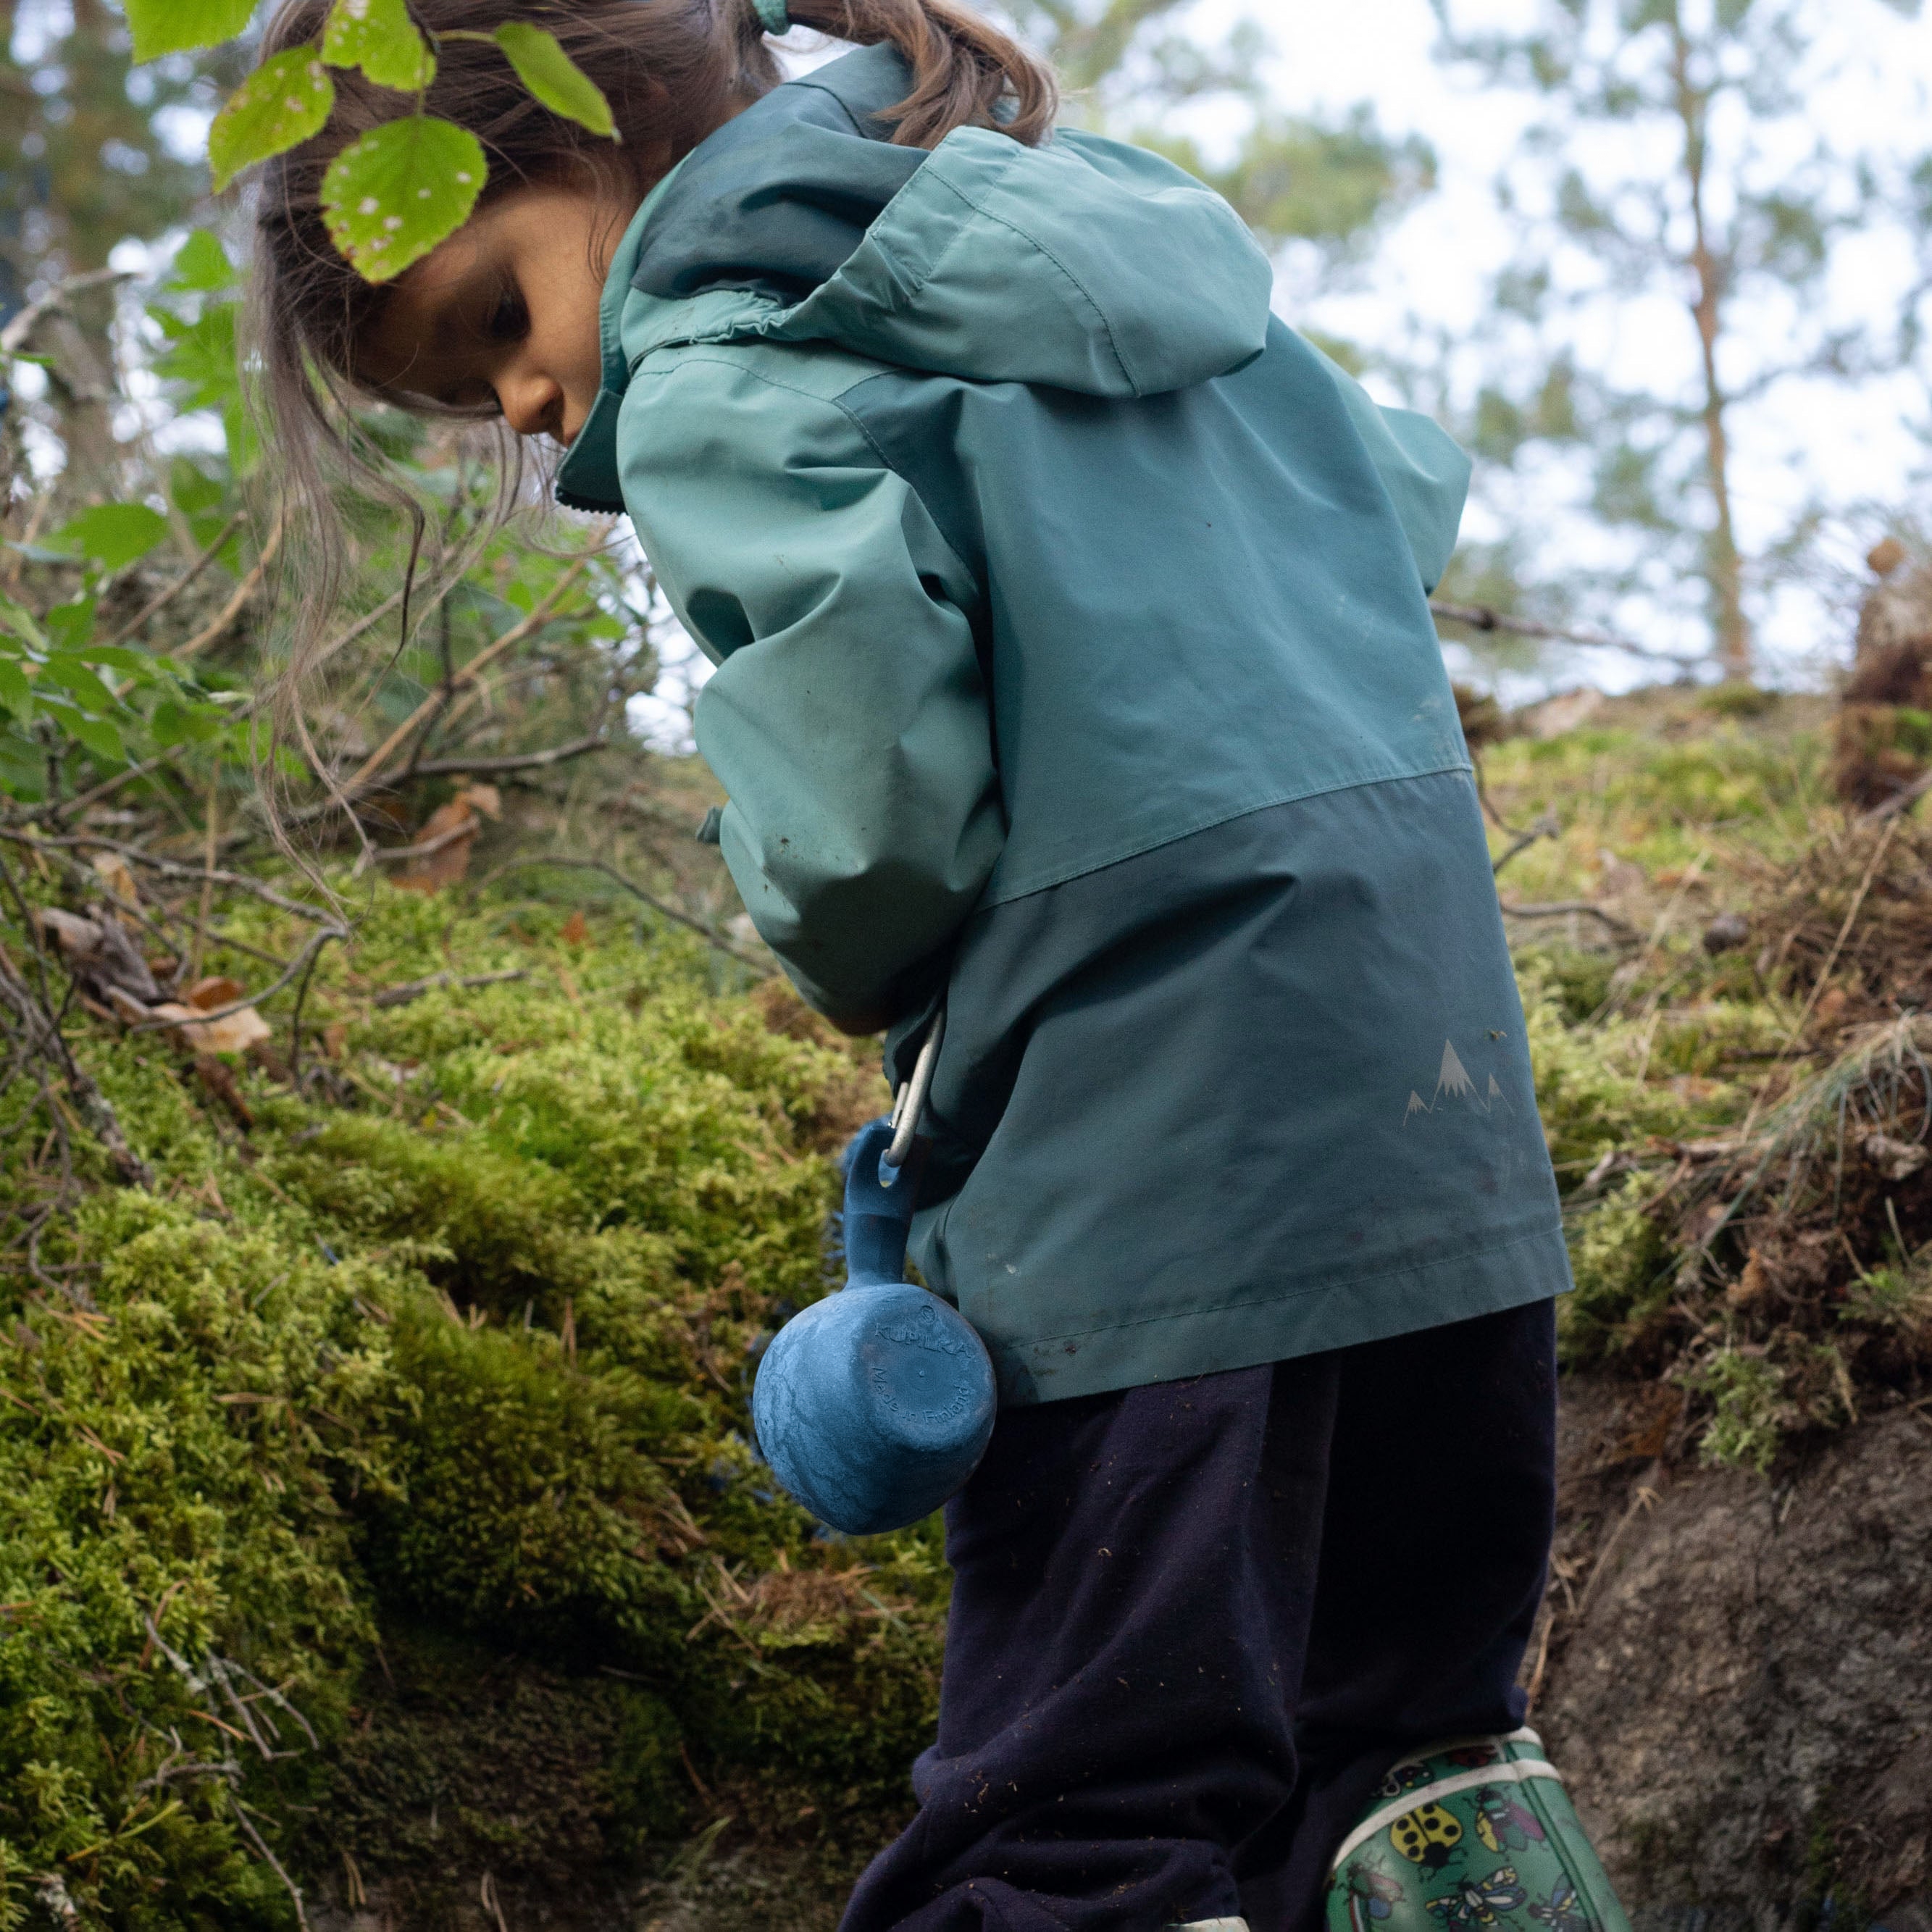 Детская походная кружка кукса Kupilka 12 Junior, Blueberry  для туризма, кемпинга, отдыха на природе